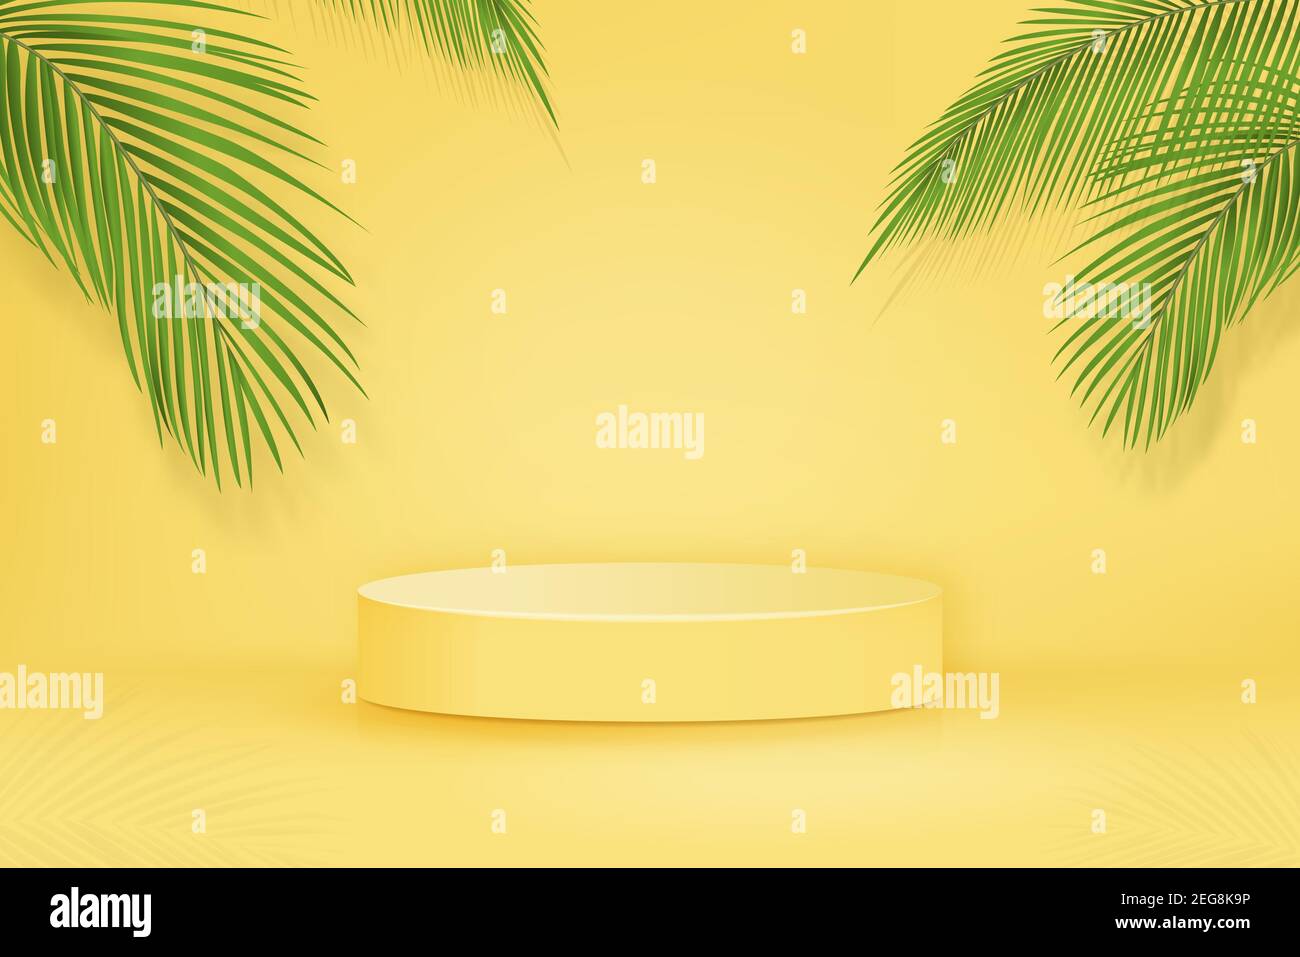 Maquette de podium en 3D sur fond jaune avec feuilles de palmier pour la nourriture et le placement de produits dans des concepts tropicaux, illustration vectorielle Illustration de Vecteur